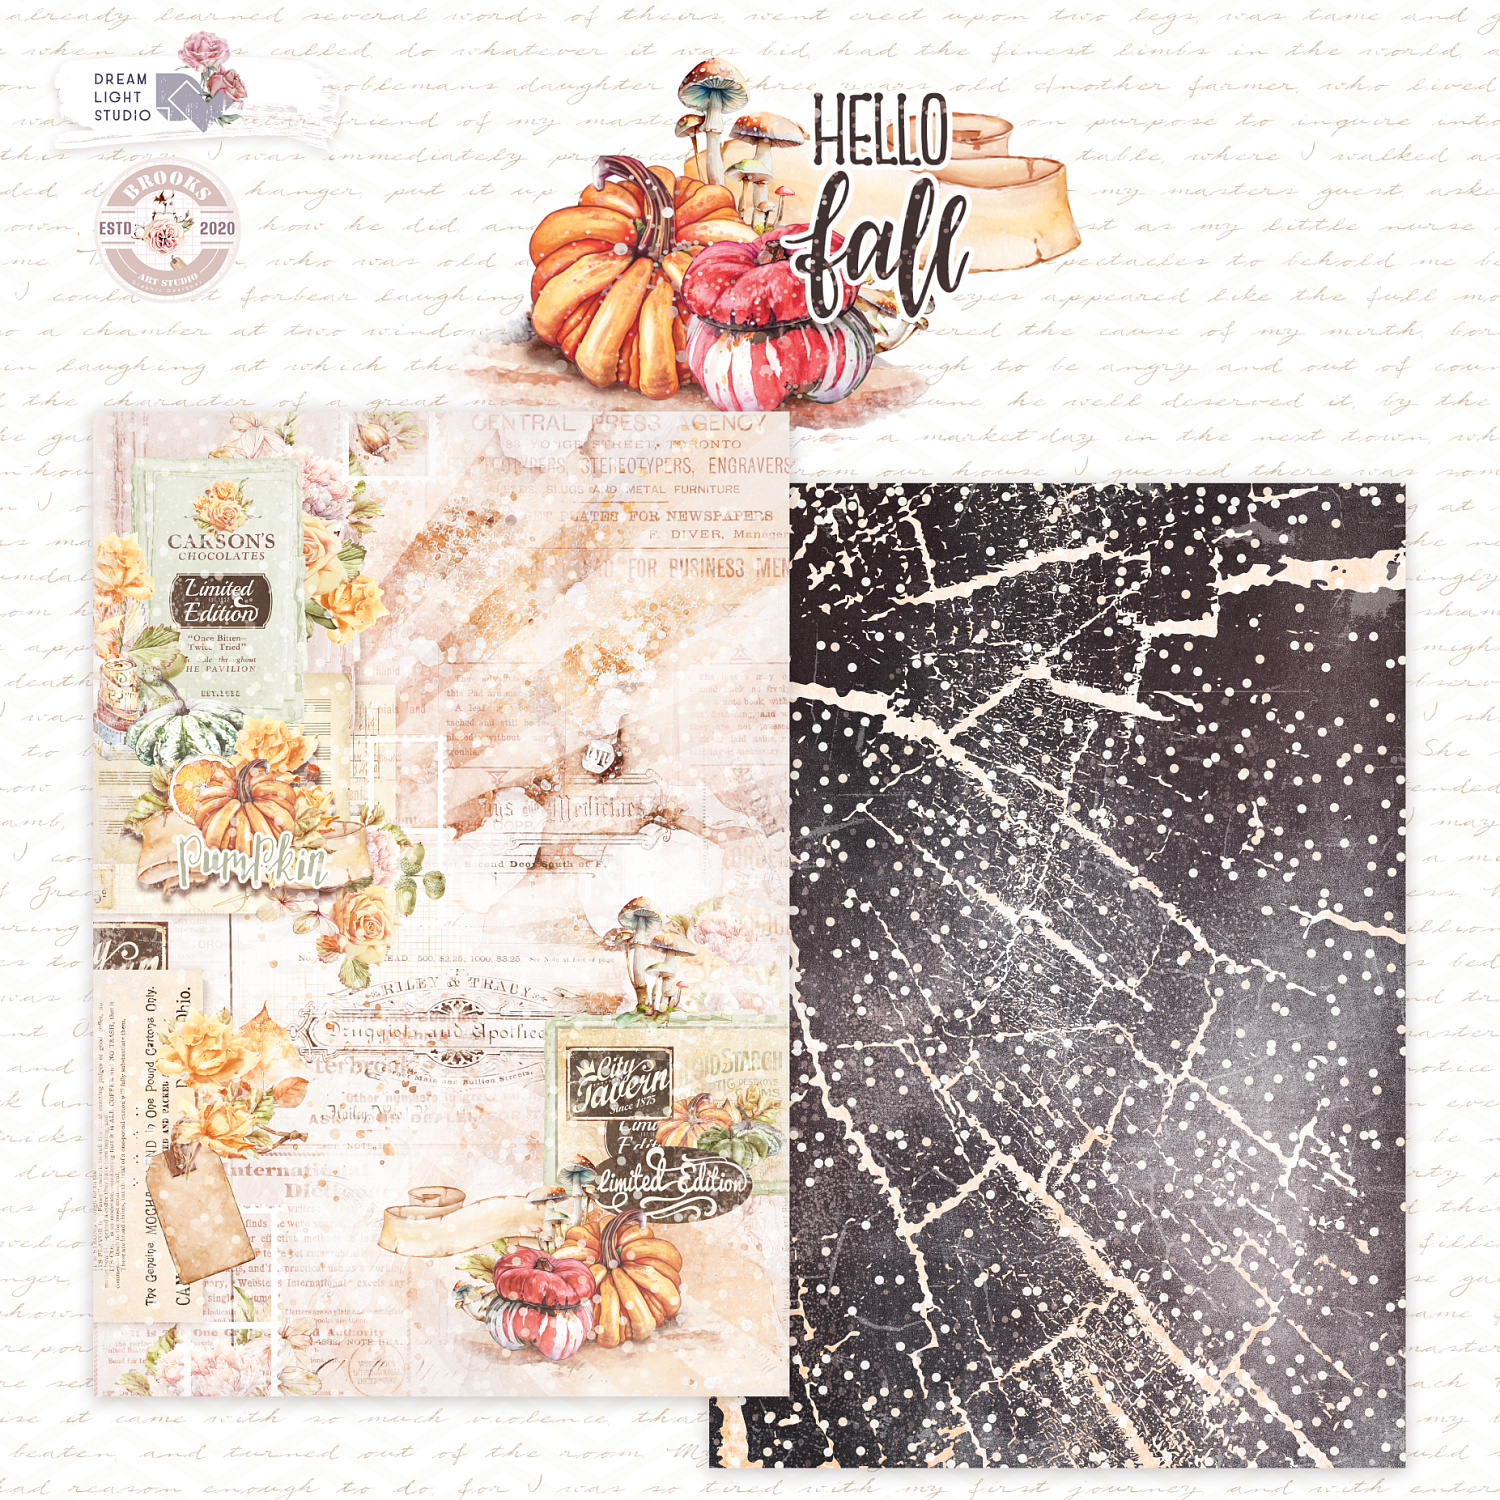 картинка Набор бумаги  "Hello, Fall" DB0023-A4, A4, 12 двусторонних листов, пл. 190 г/м2 от магазина Компания+